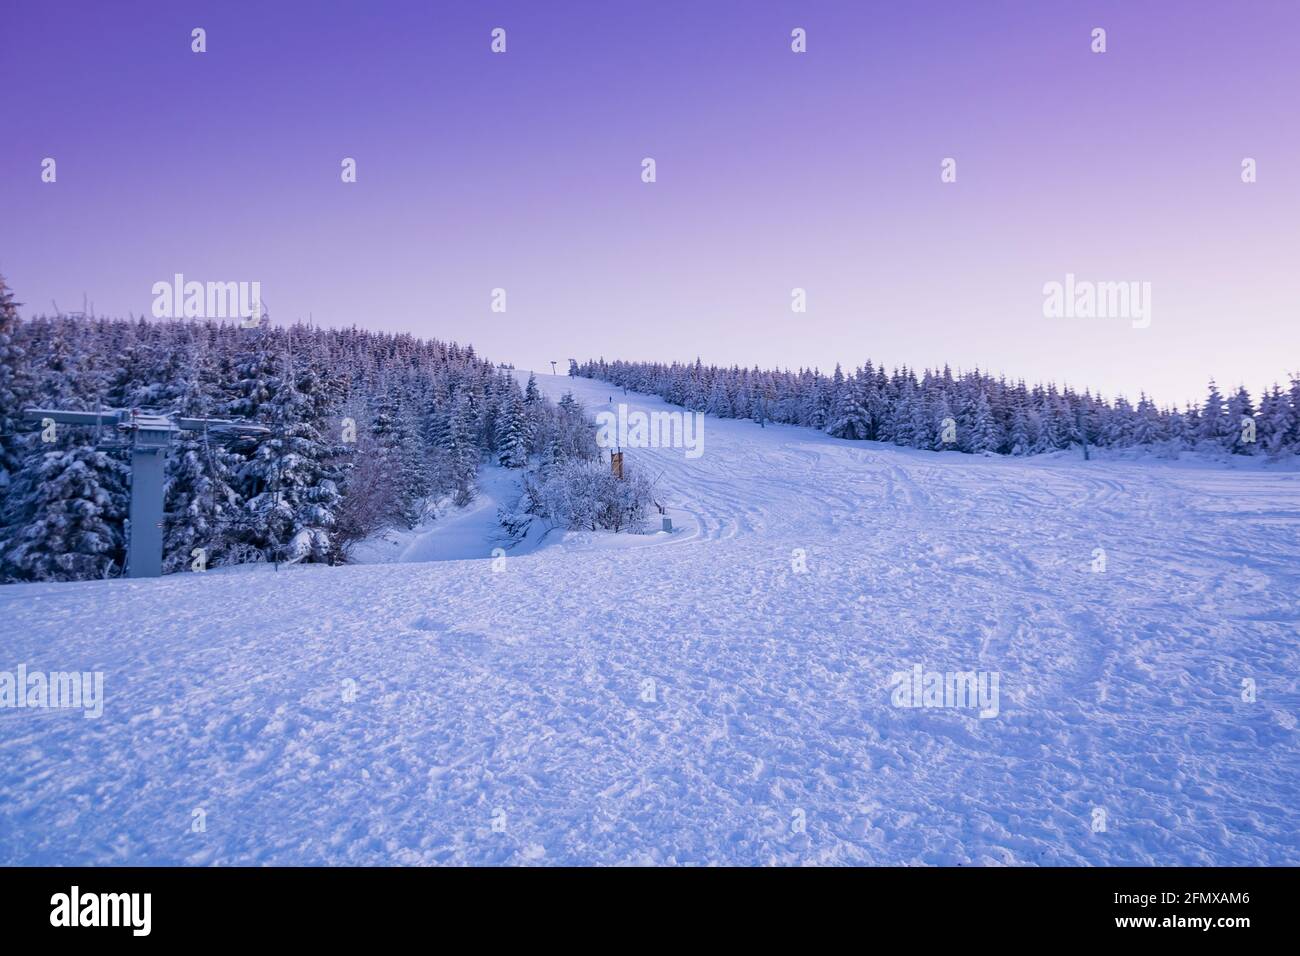 Jeseník, REPUBBLICA CECA - Feb 01, 2021: Pista da sci al tramonto. Collina innevata coperta di neve. Foto Stock